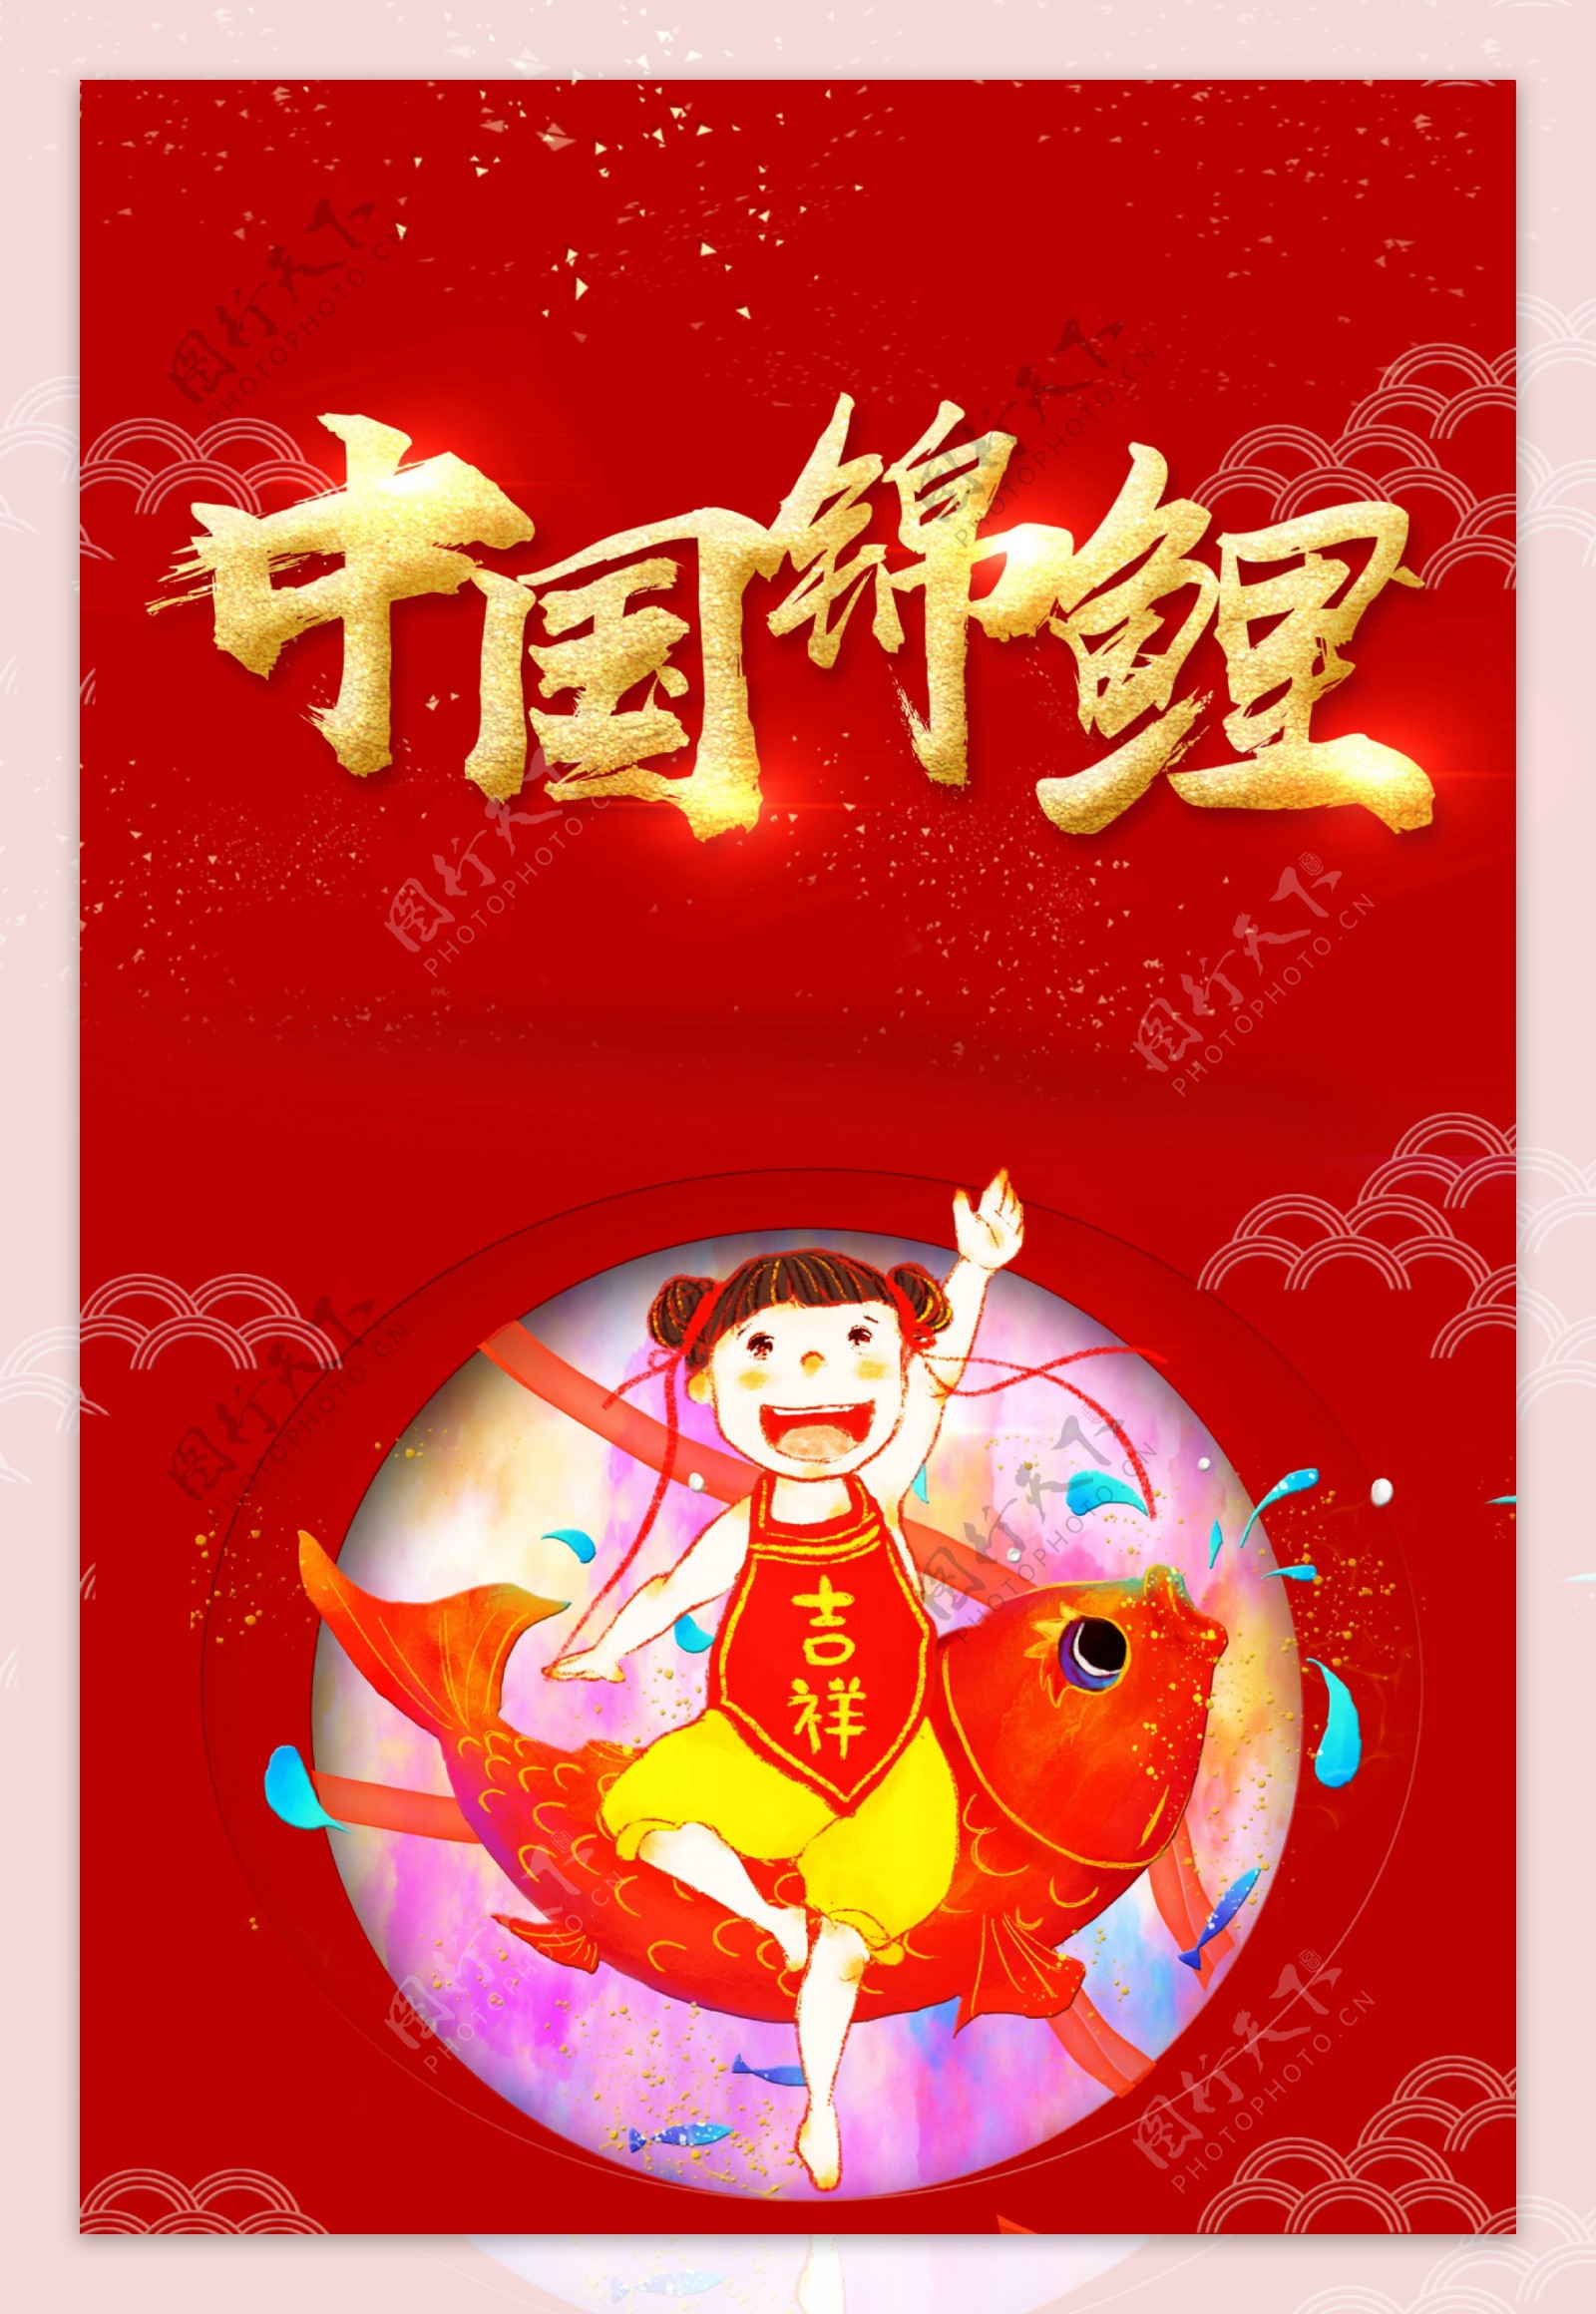 中国锦鲤海报背景